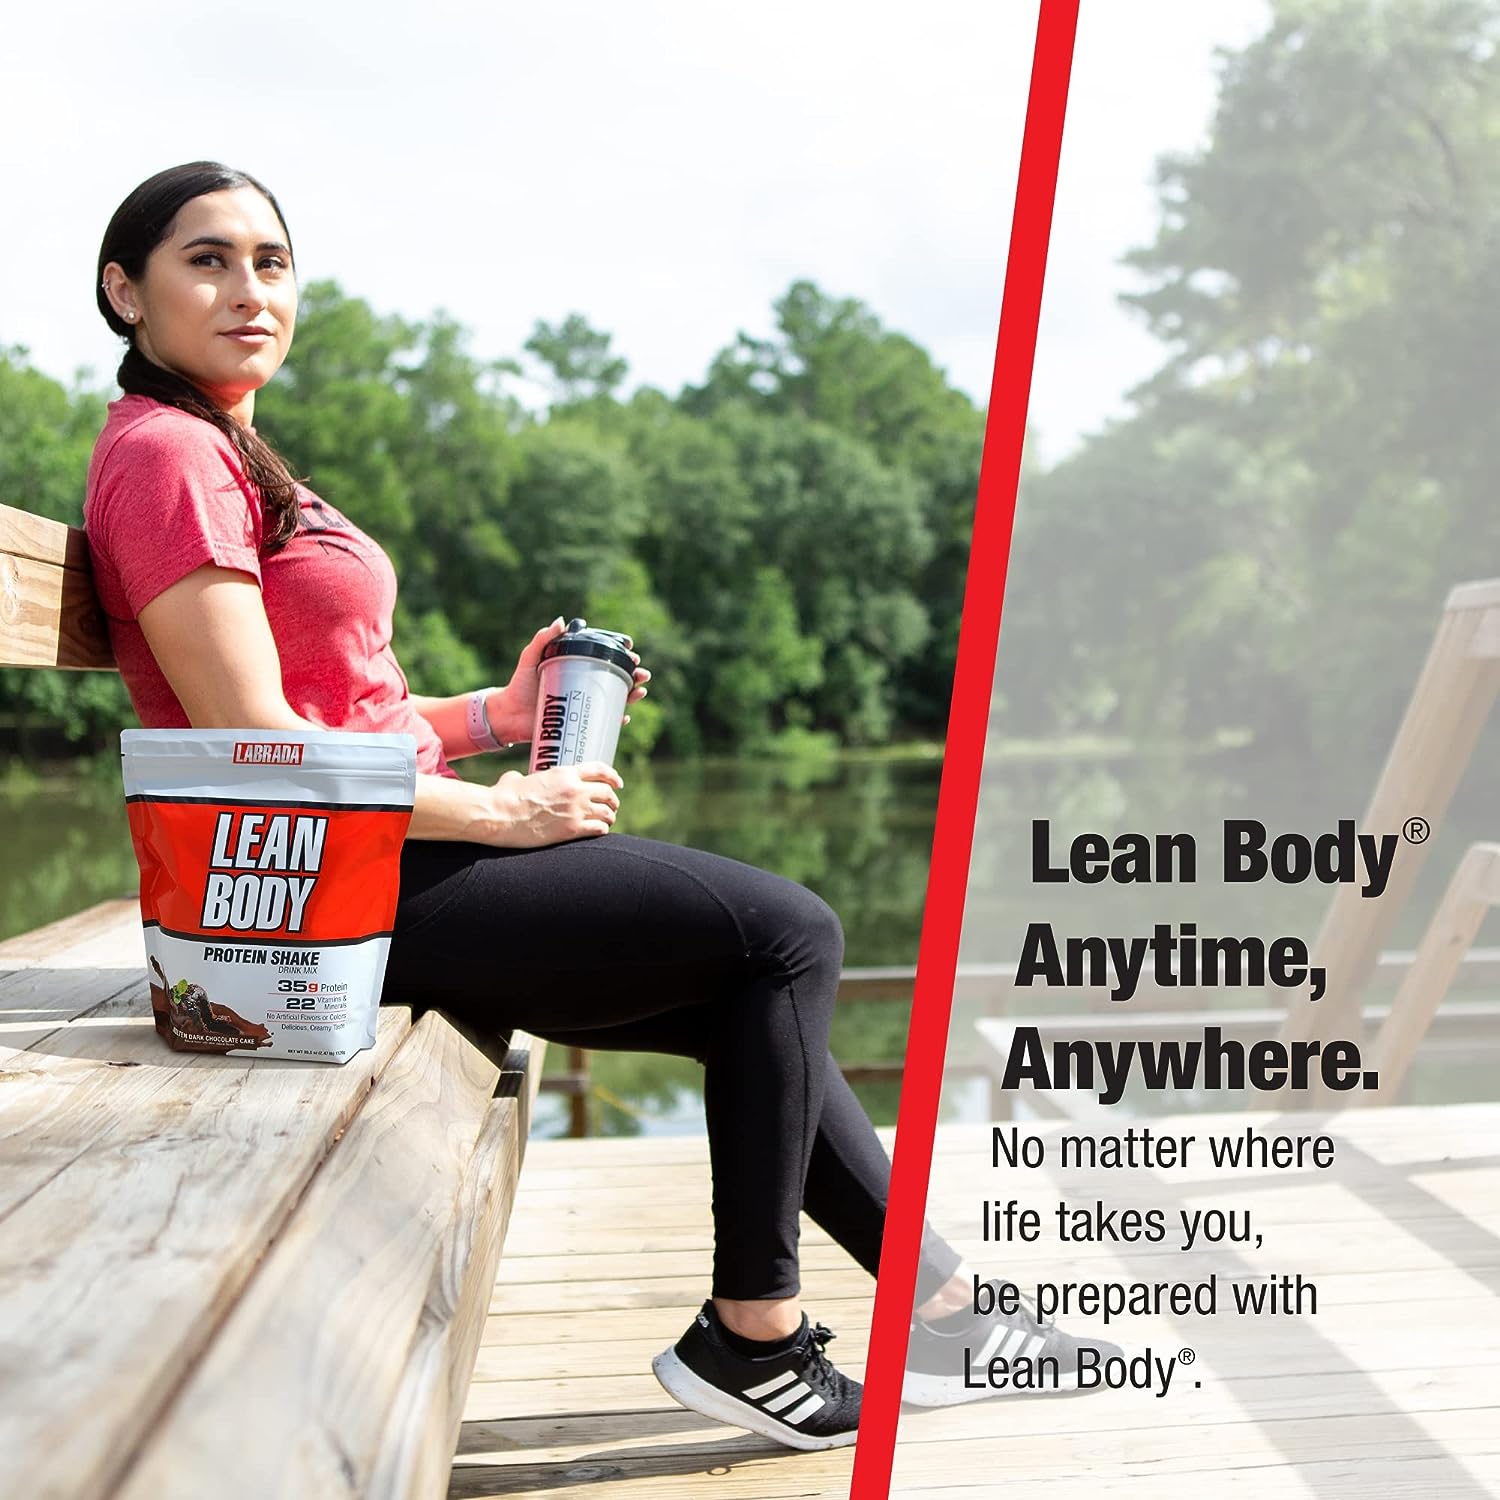 Lean Body Labrada 4.63lbs - Sữa dinh dưỡng hỗ trợ tăng cơ giảm mỡ thay thế bữa ăn tiện lợi Healthy Cung Cấp 35 Protein và Các Vitamin Năng Lượng Đảm Bảo Dinh Dưỡng Hoàn Chỉnh Bữa Ăn Lean Body Meal Replacement